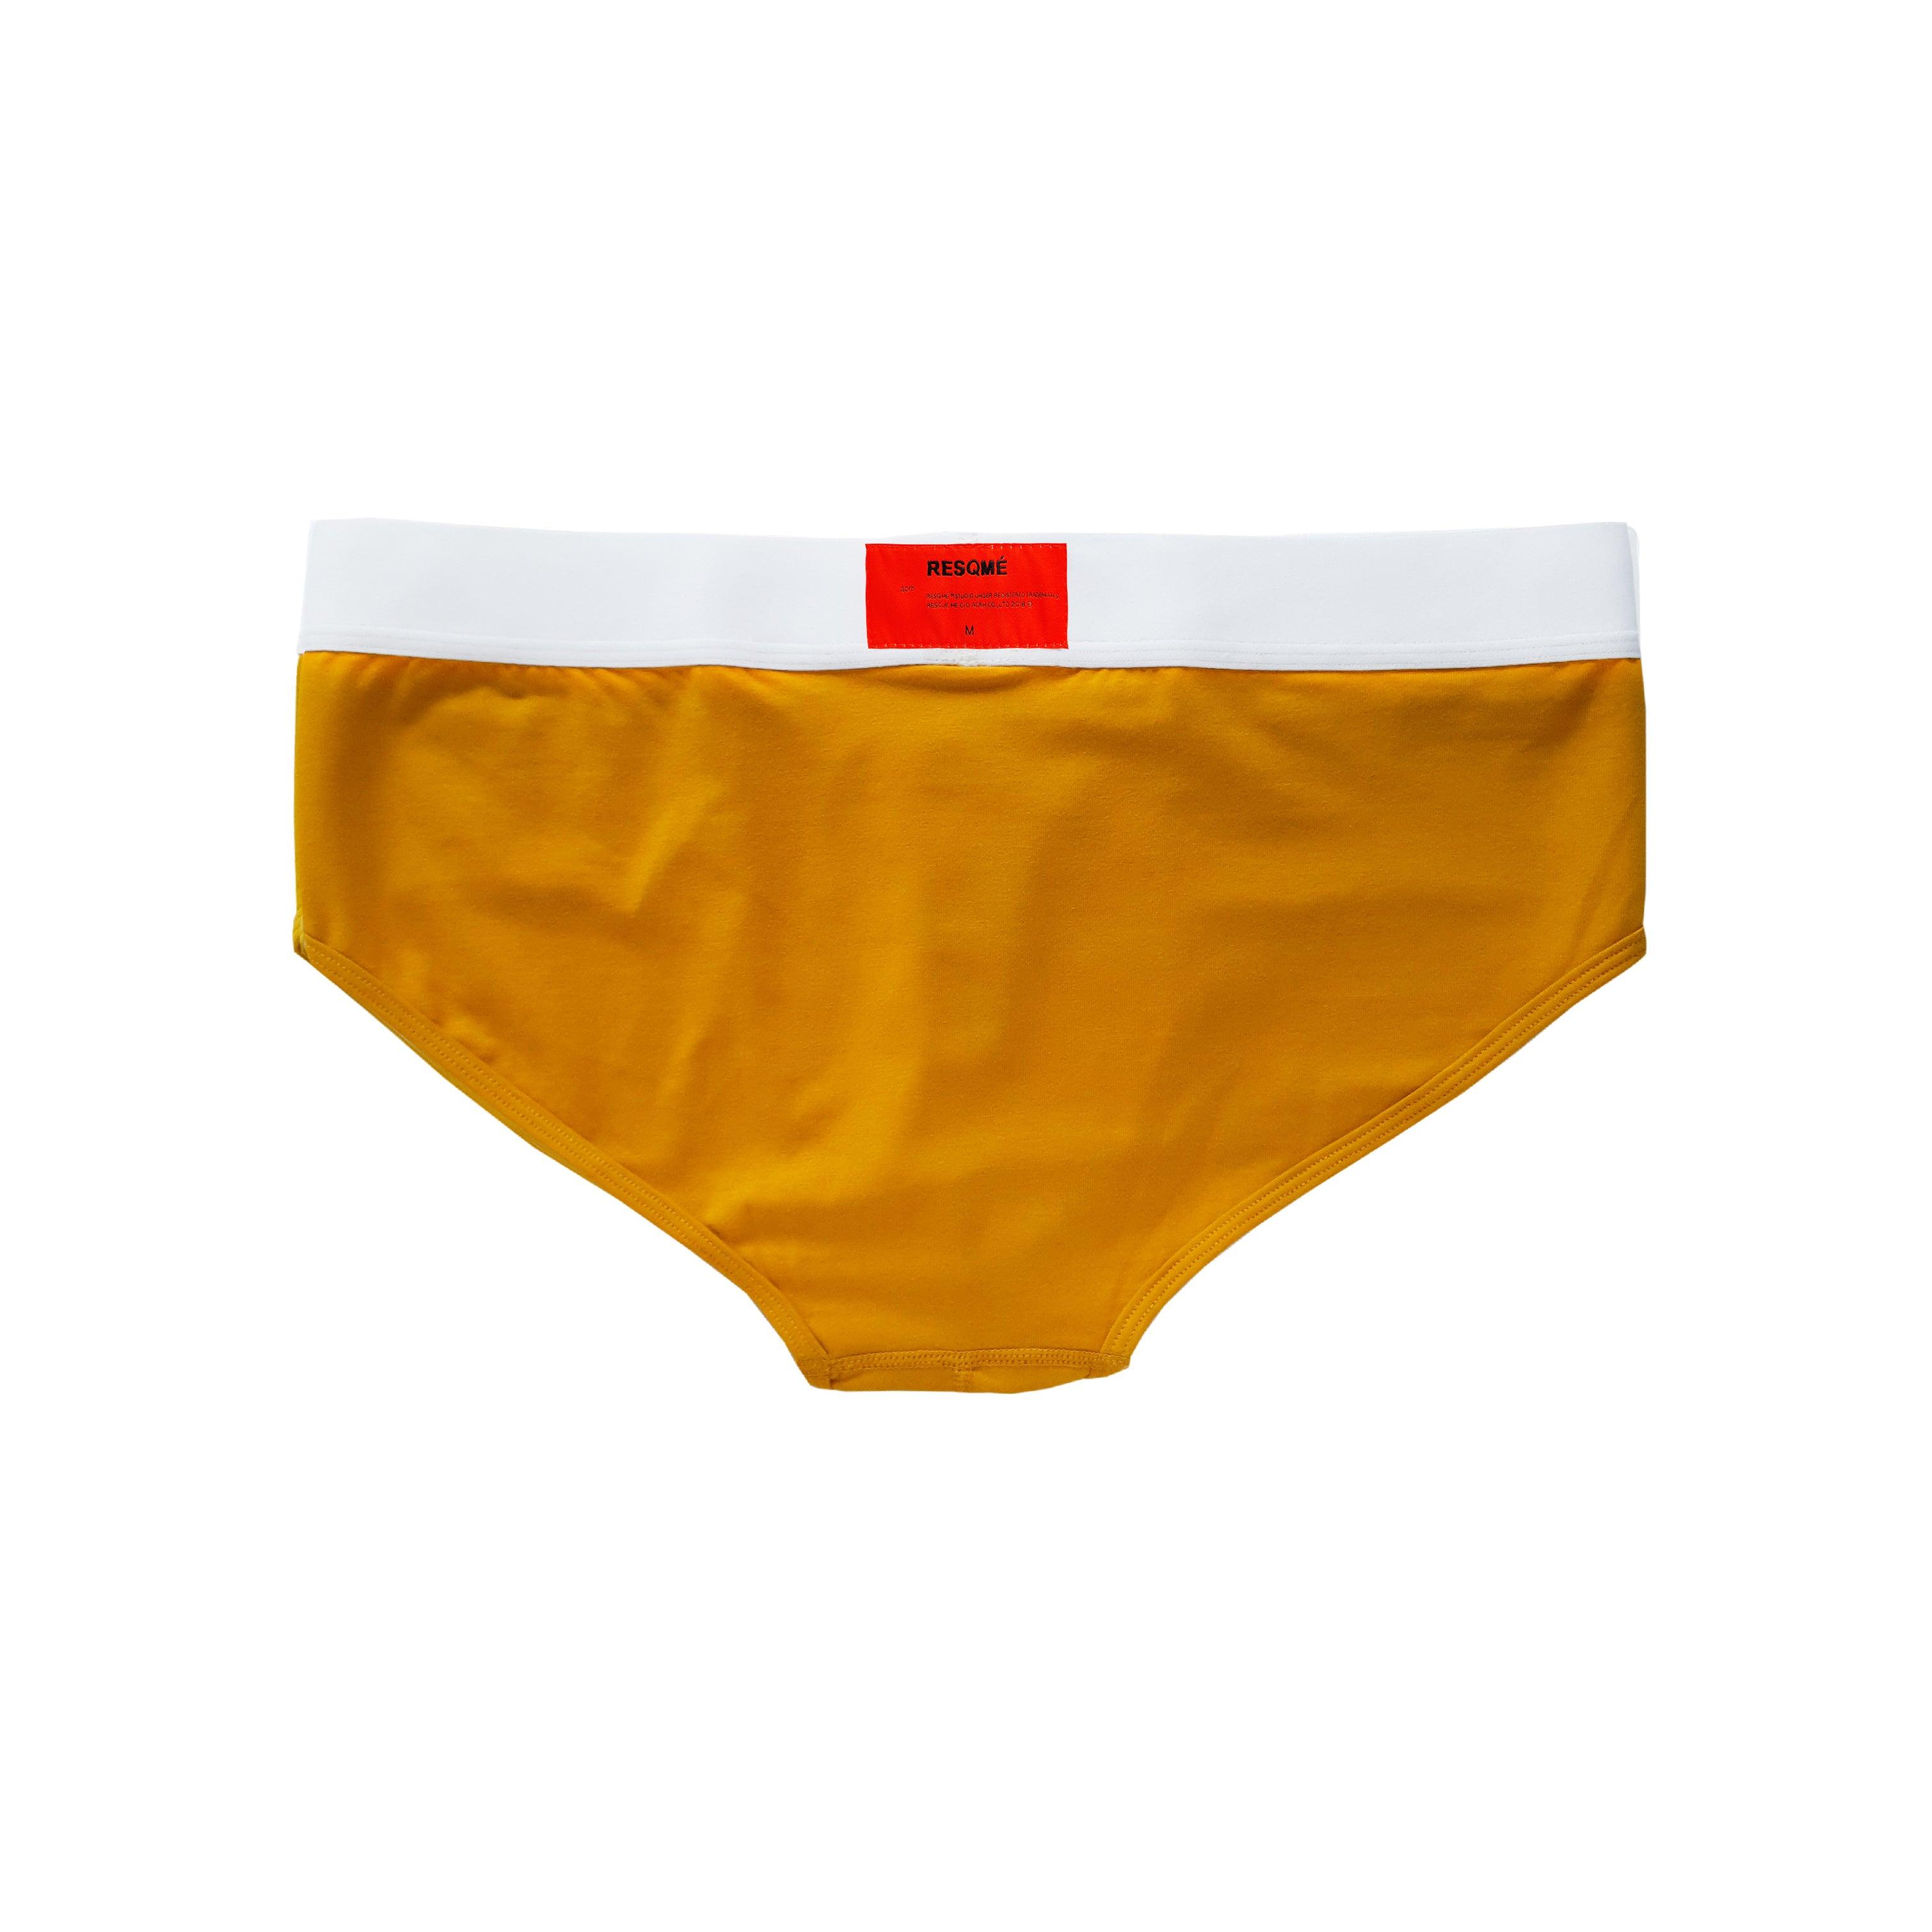 Underwear Brief- Mustard Yellow Underwear – RESQME